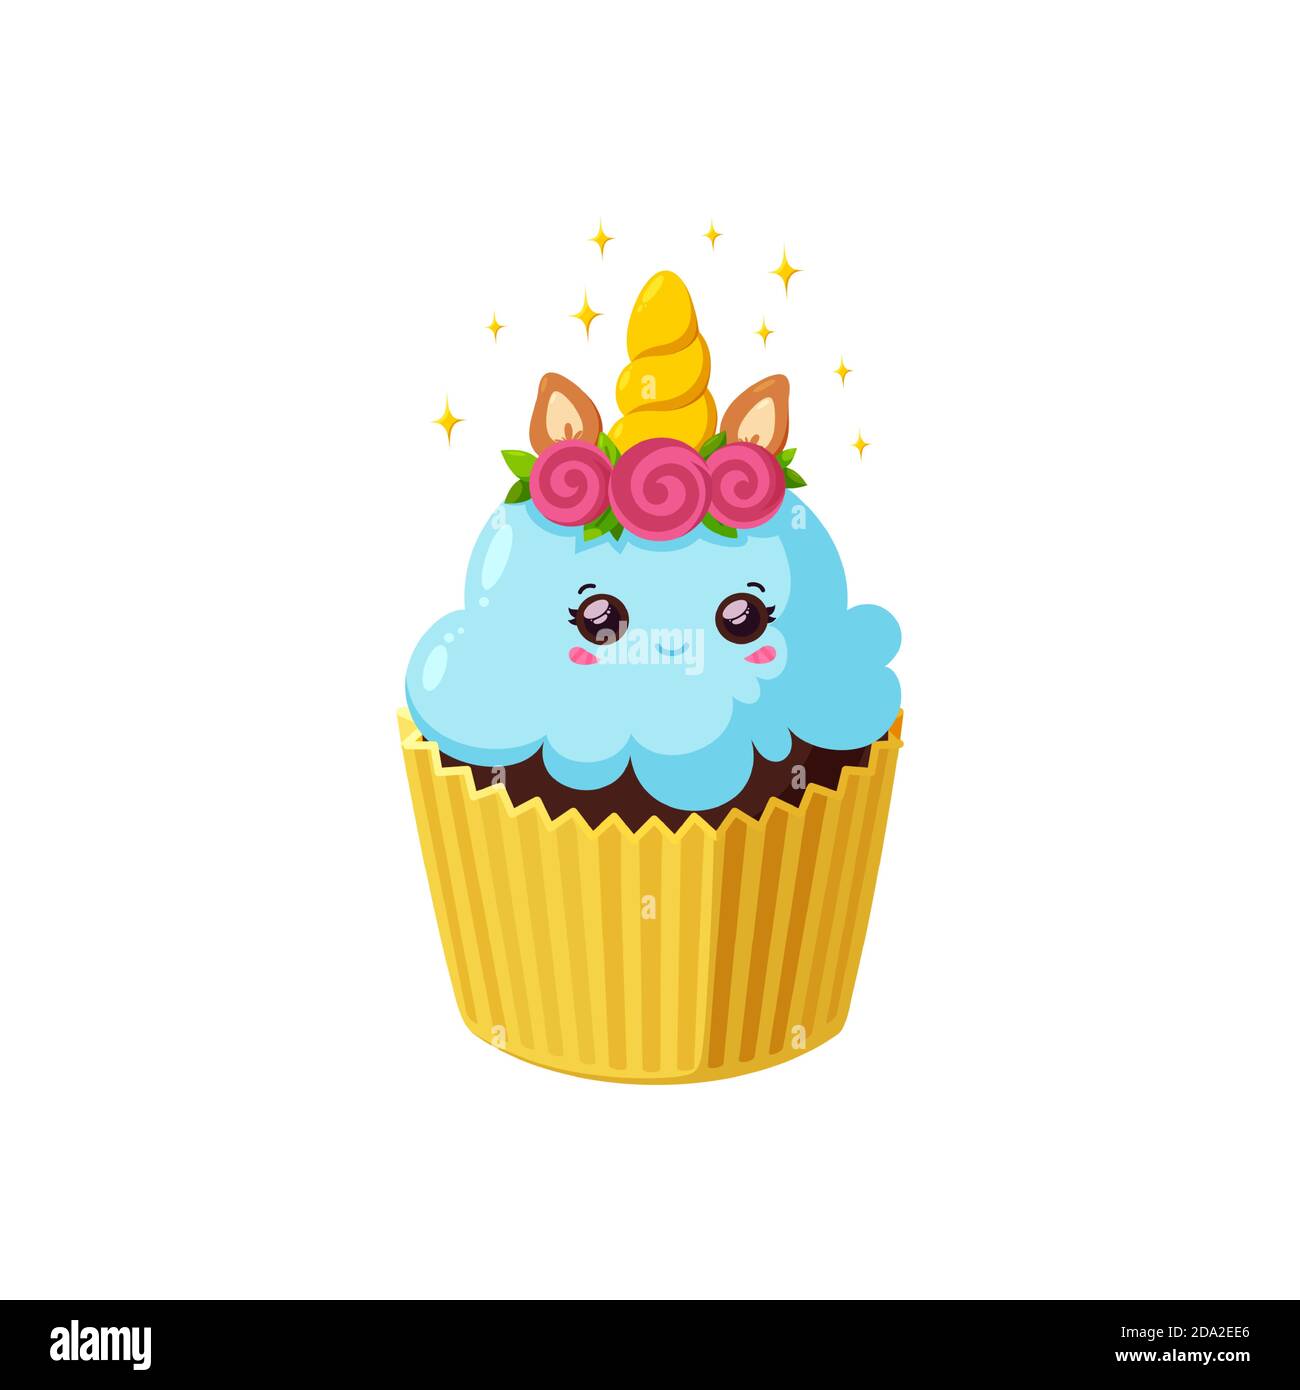 Einhorn Cupcake mit glänzendem Glasur. Fairy Kawaii Kuchen in Papierbecher. Leckeres Dessert mit Horn, Augen, Blumen und Ohren. Vektor-Illustration in niedlichen Cartoon Stock Vektor